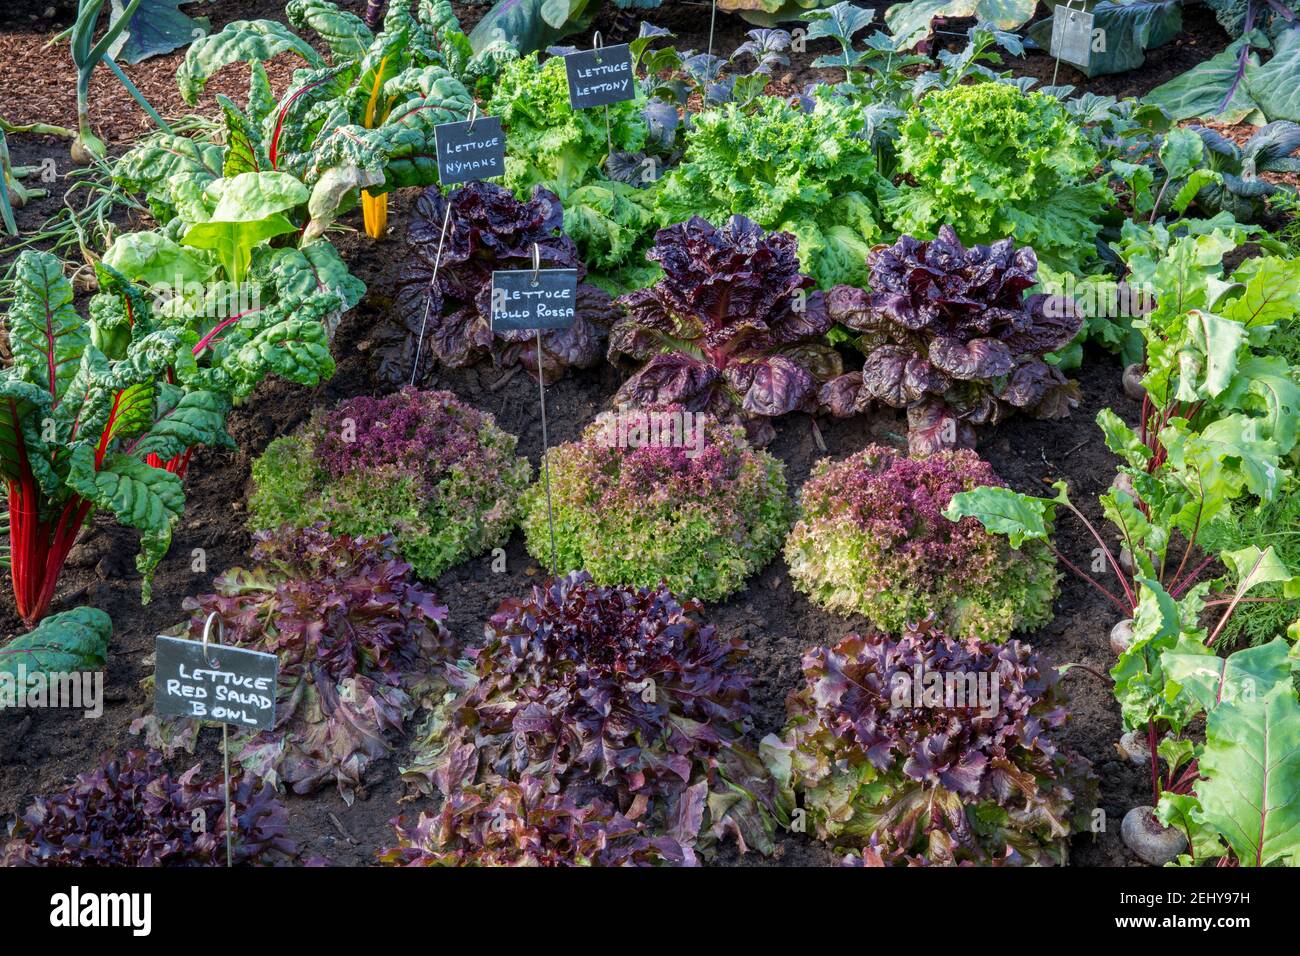 cuisine biologique jardin potager salade de lettres avec des étiquettes de plantes en croissance Dans les rangs, les variétés incluent la laitue Lollo Rossa - salade rouge Bol - Nymans, Royaume-Uni Banque D'Images